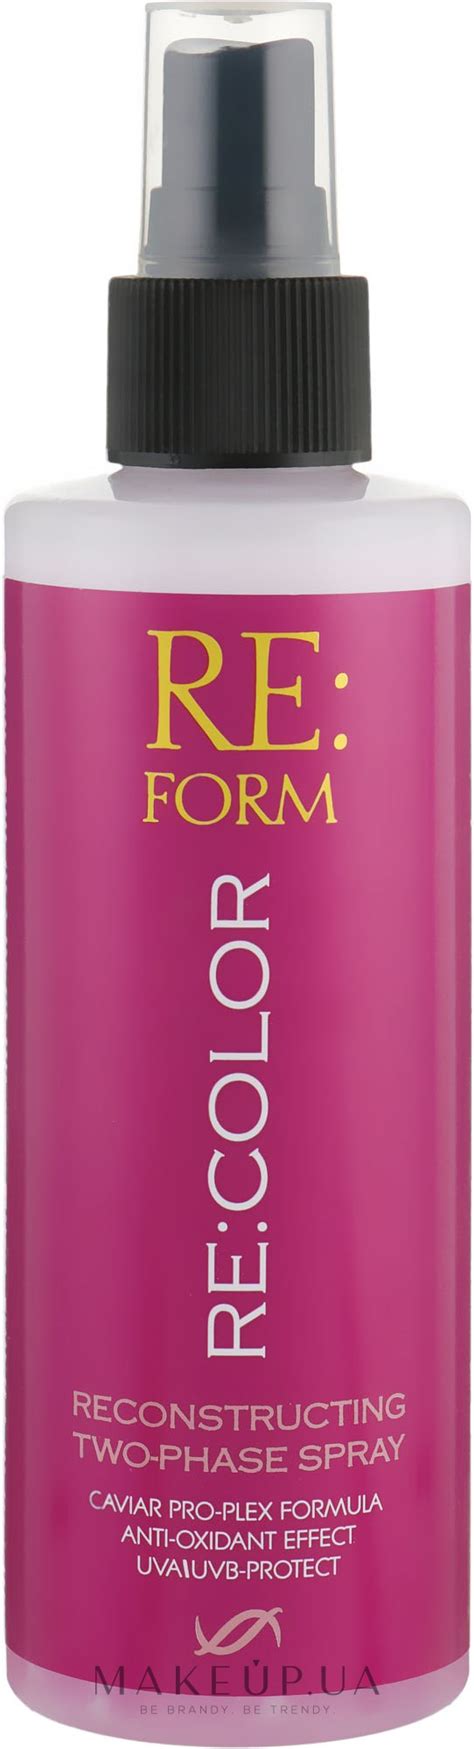 Двофазний спрей для відновлення фарбованого волосся Збереження кольору Reform Recolor